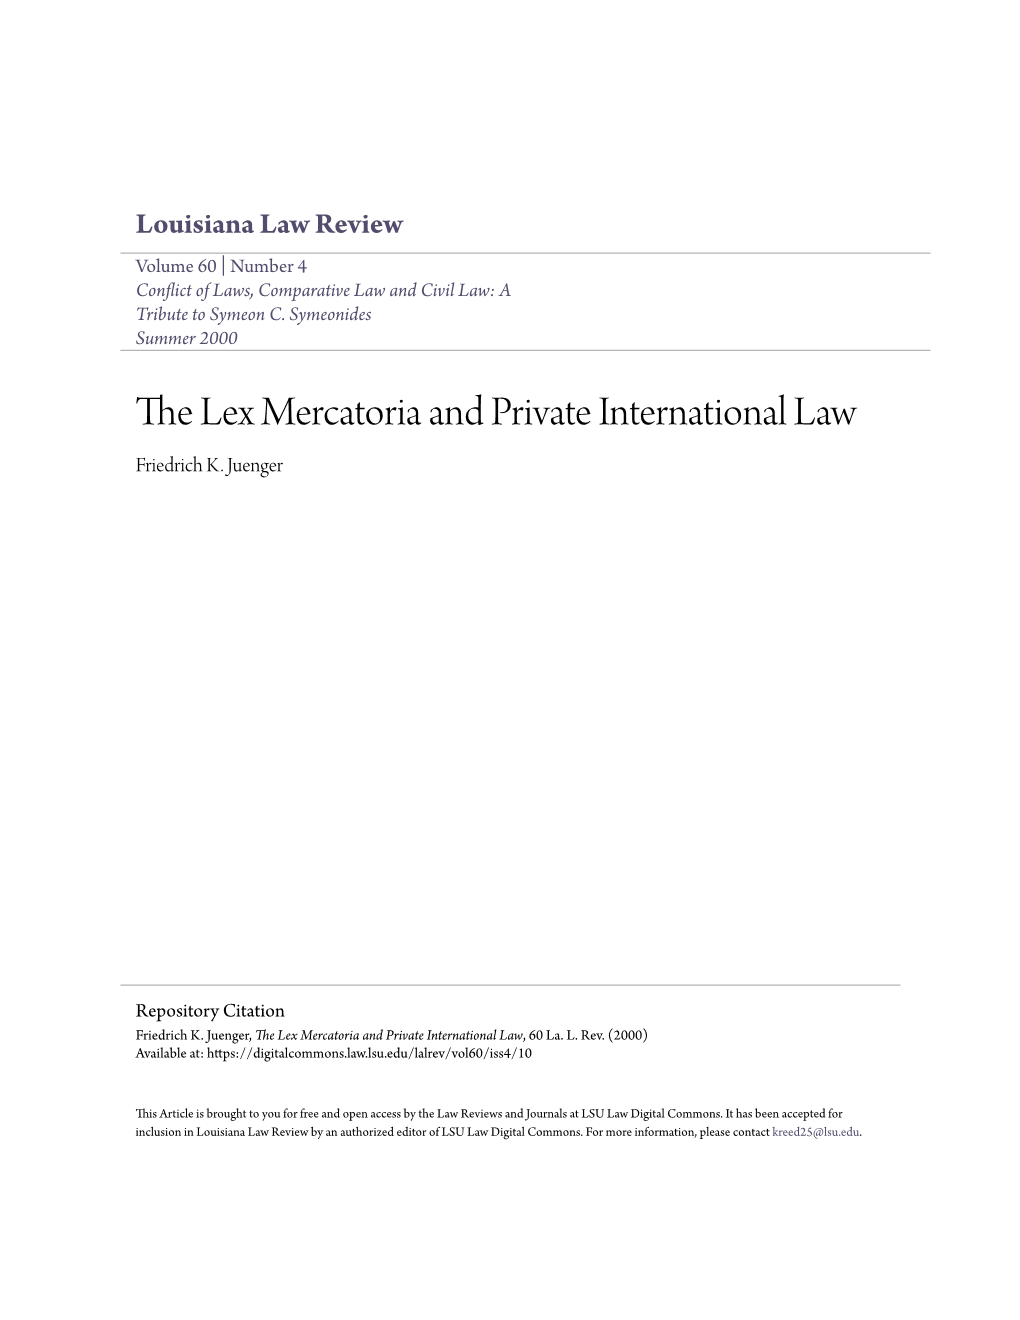 The Lex Mercatoria and Private International Law, 60 La